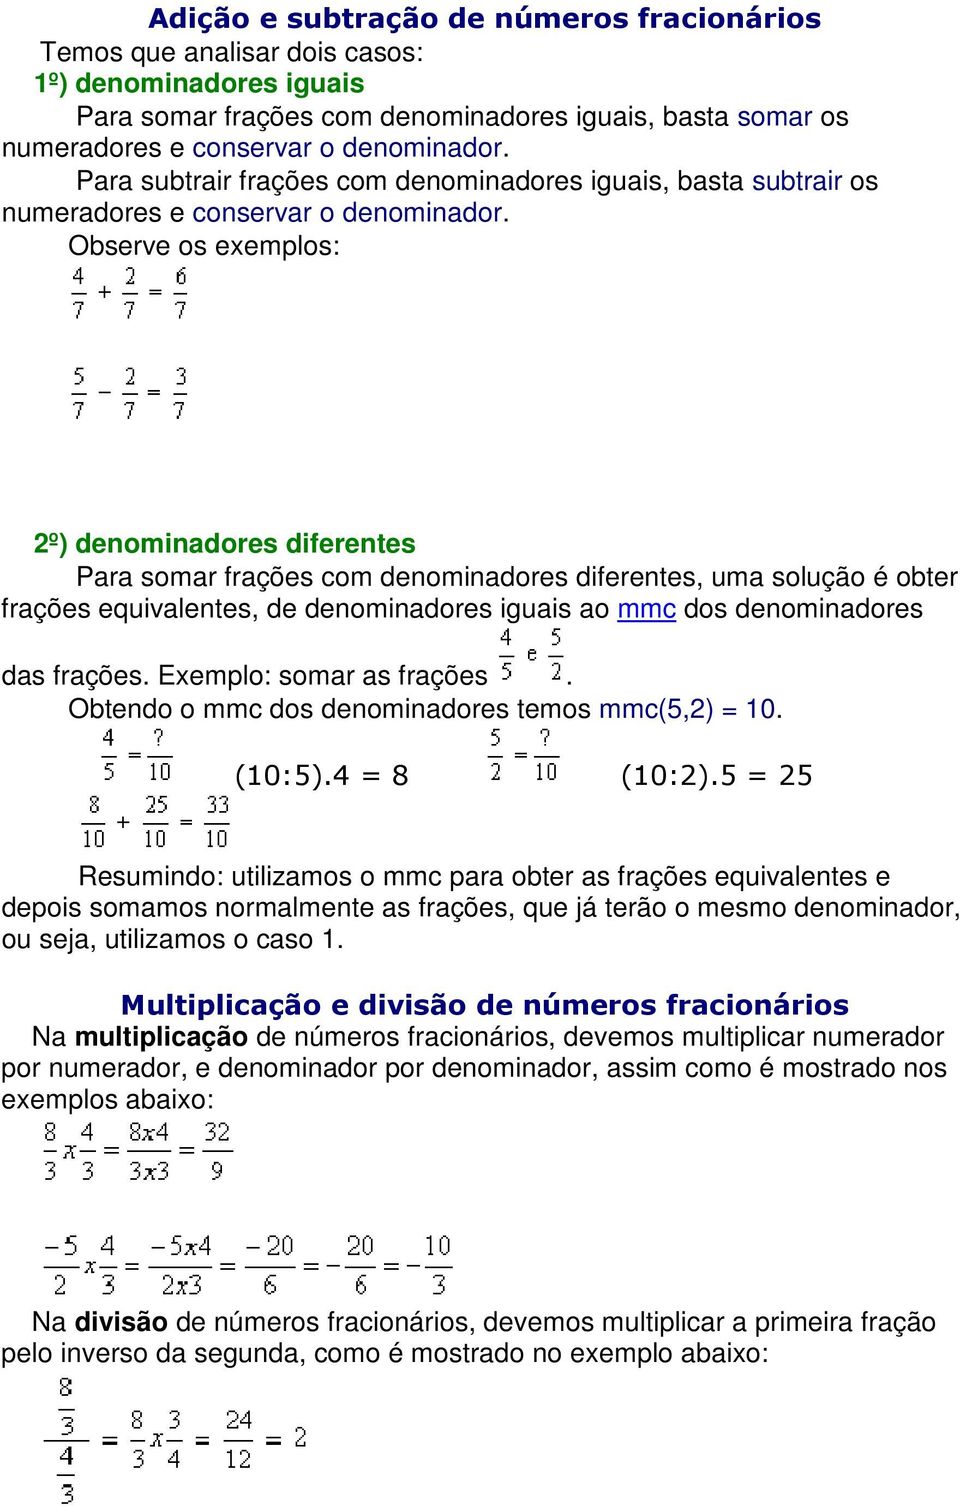 Observe os exemplos: 2º) denominadores diferentes Para somar frações com denominadores diferentes, uma solução é obter frações equivalentes, de denominadores iguais ao mmc dos denominadores das